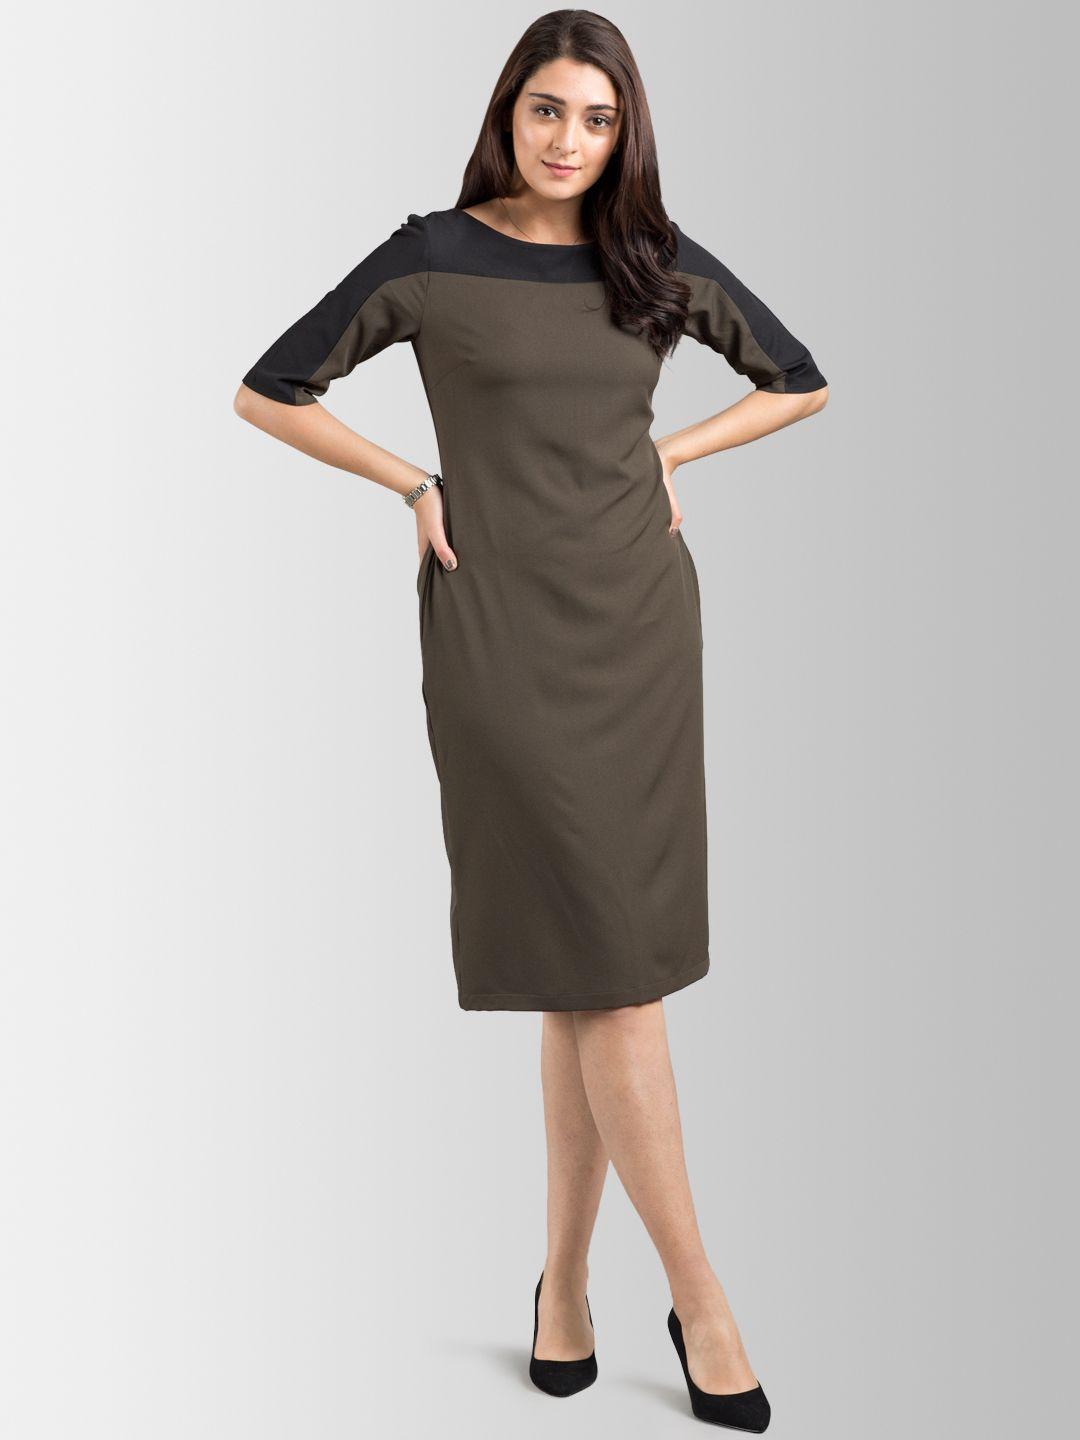 fablestreet-women-olive-brown-&-black-sheath-dress